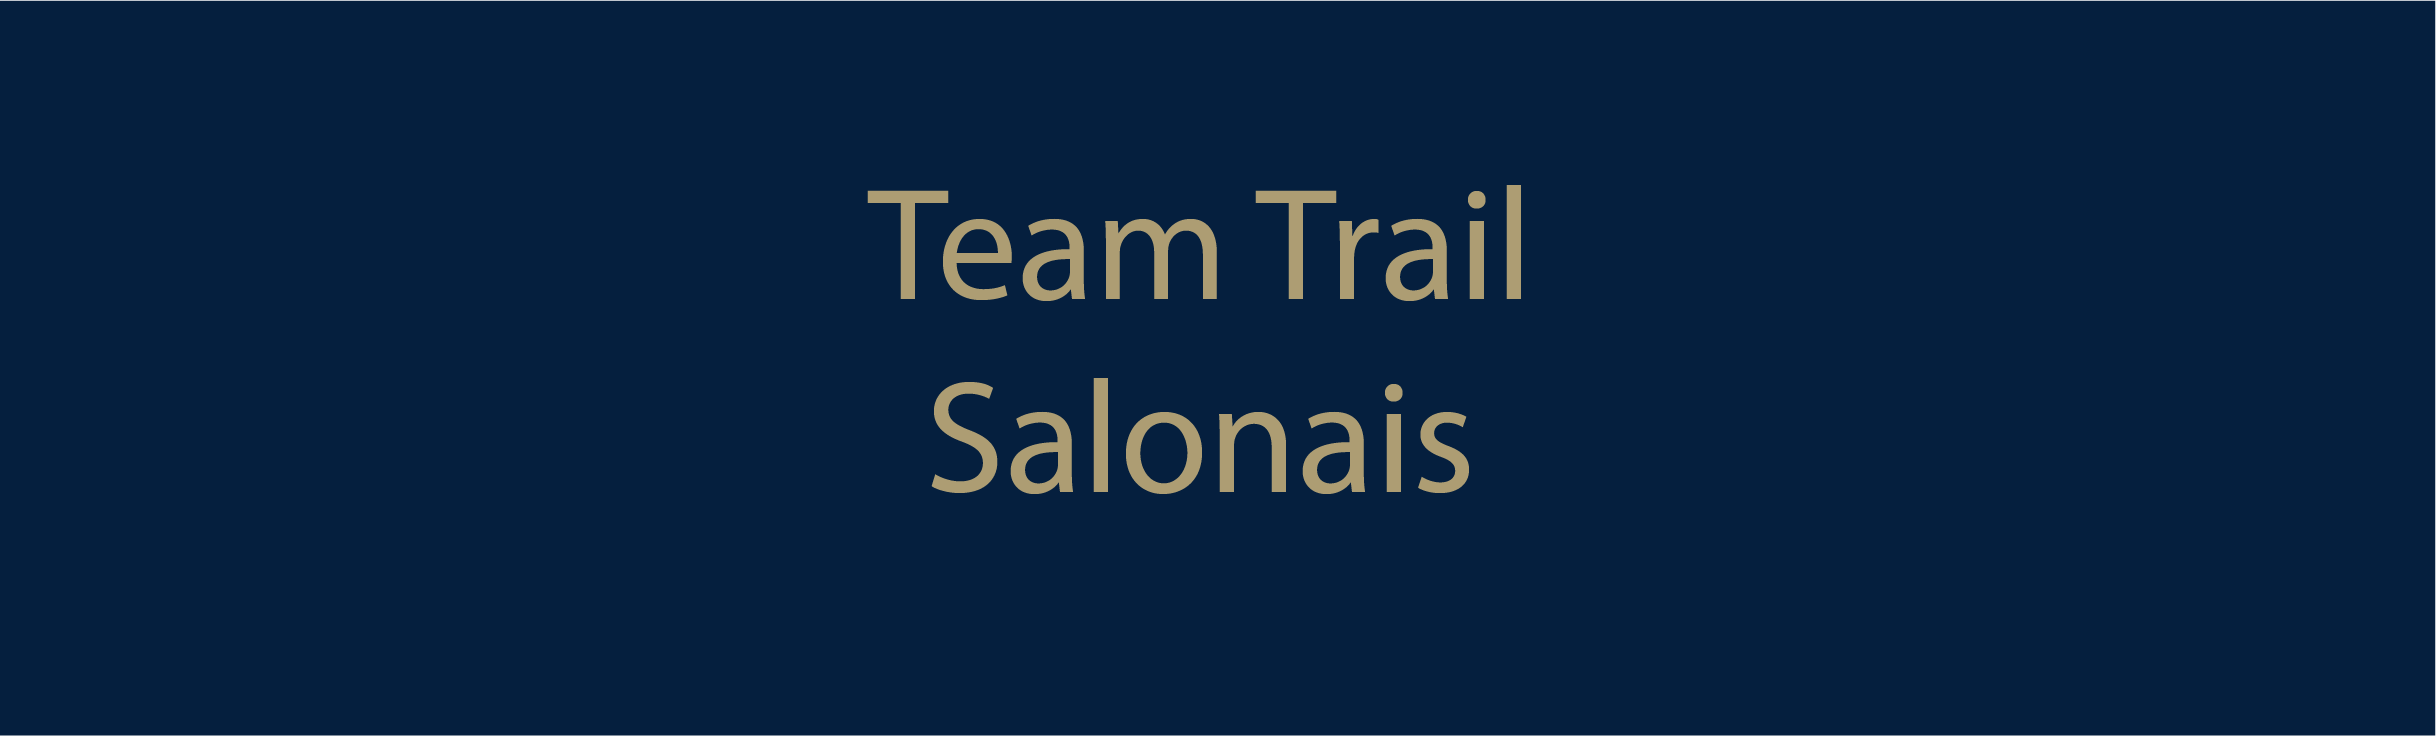 Team Trail Salonais 